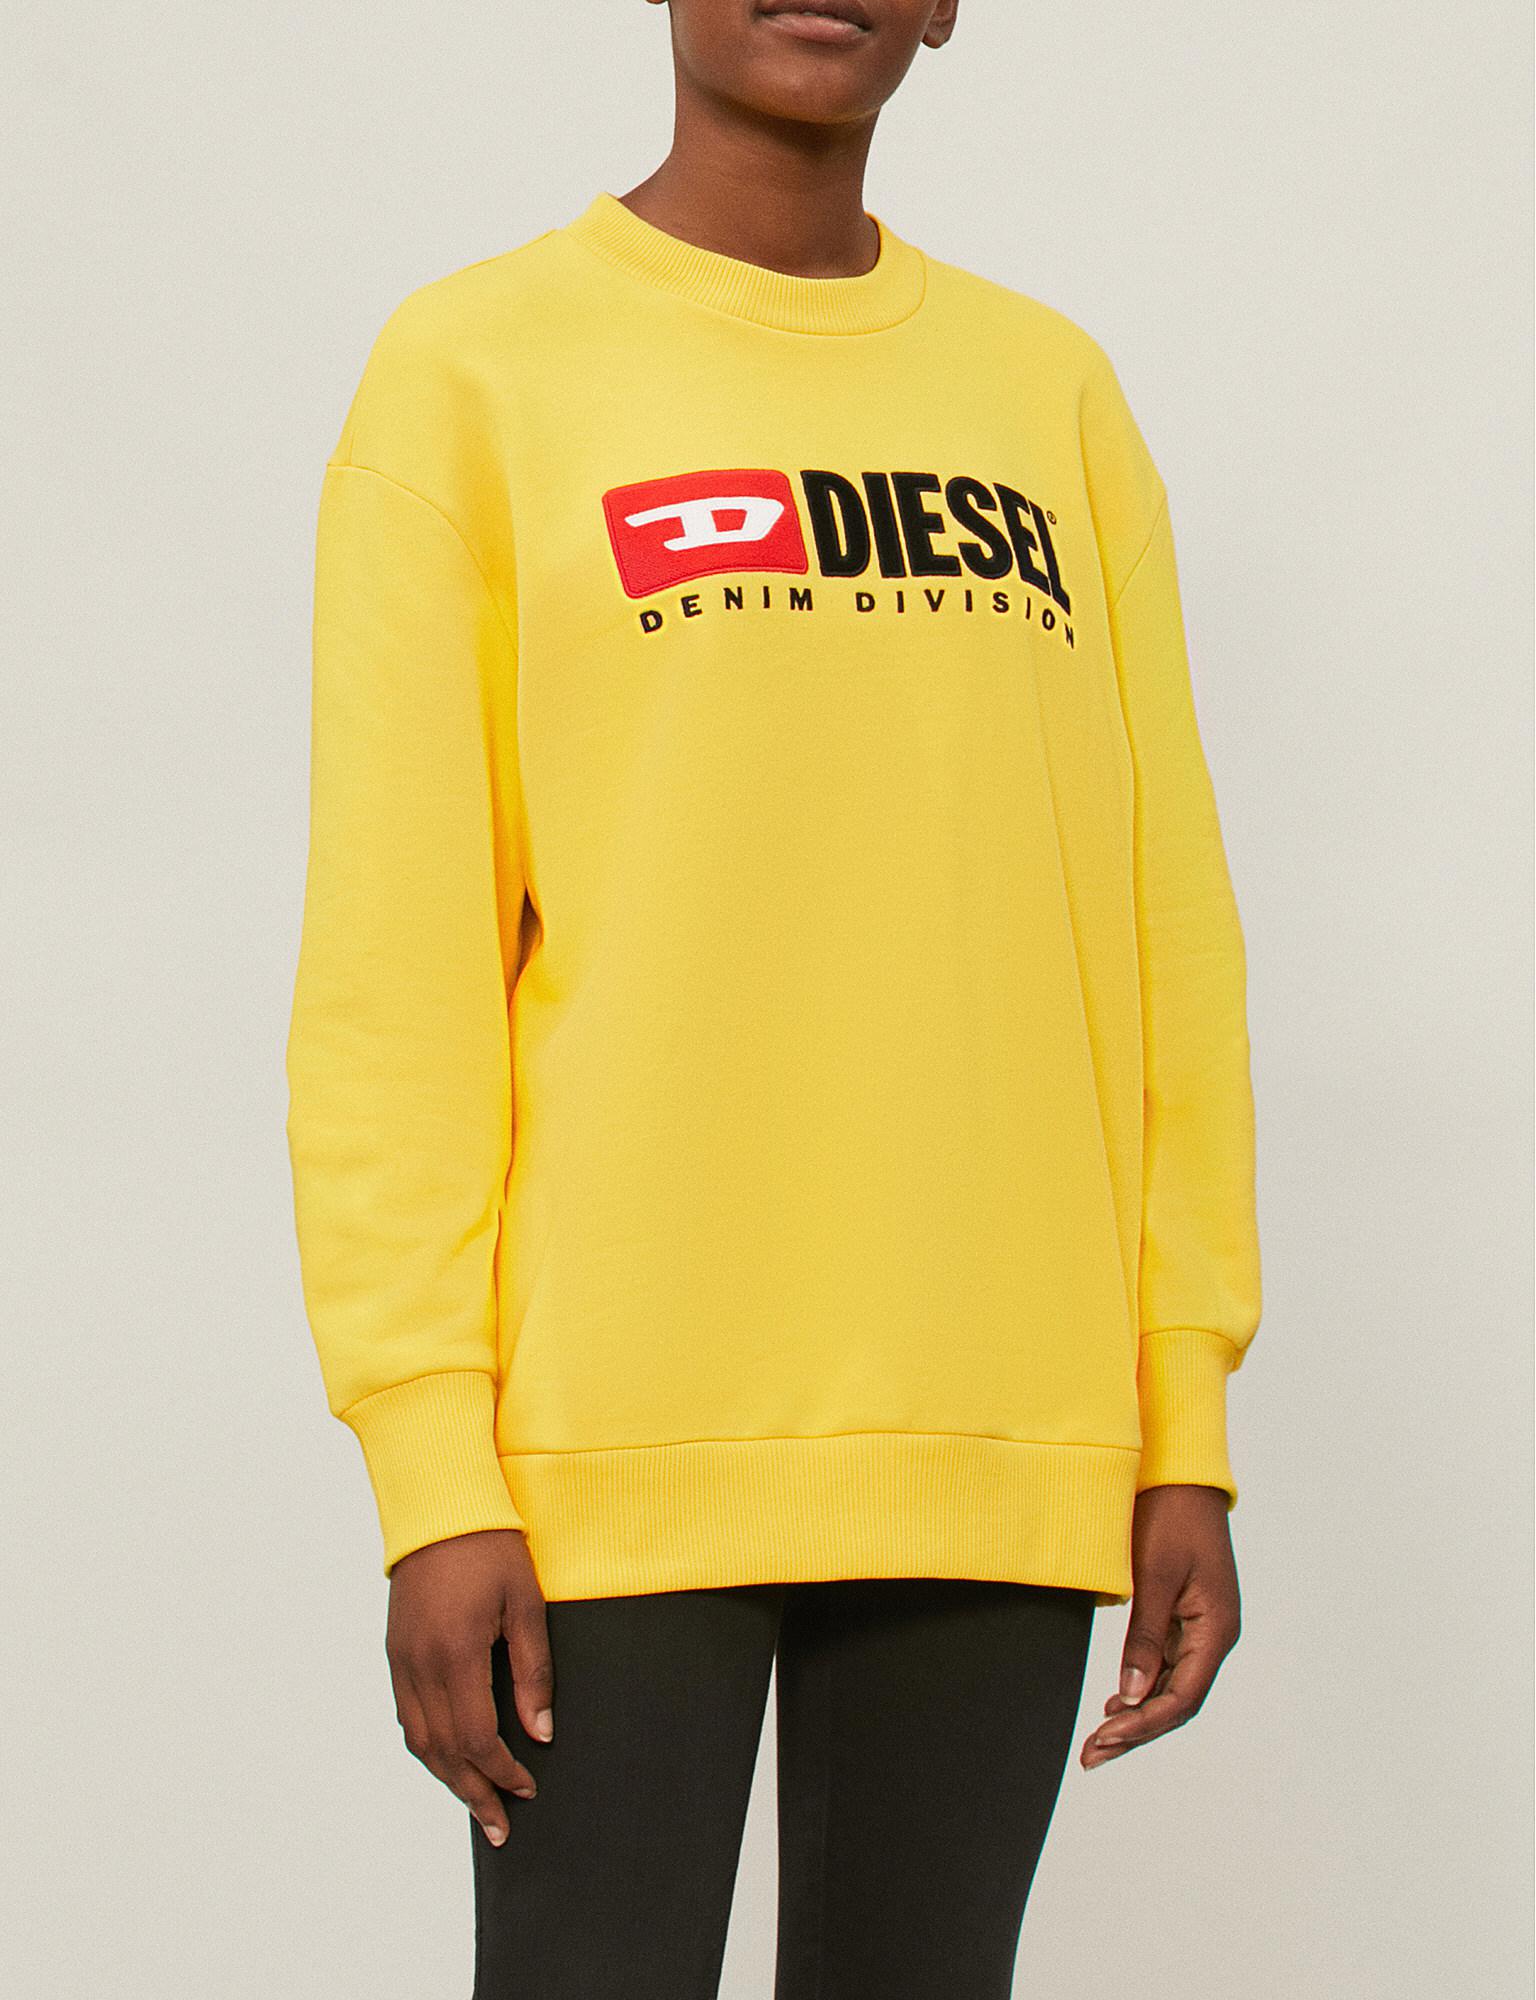 Diesel Denim-division Stretch-jersey Sweatshirt in Yellow - Lyst